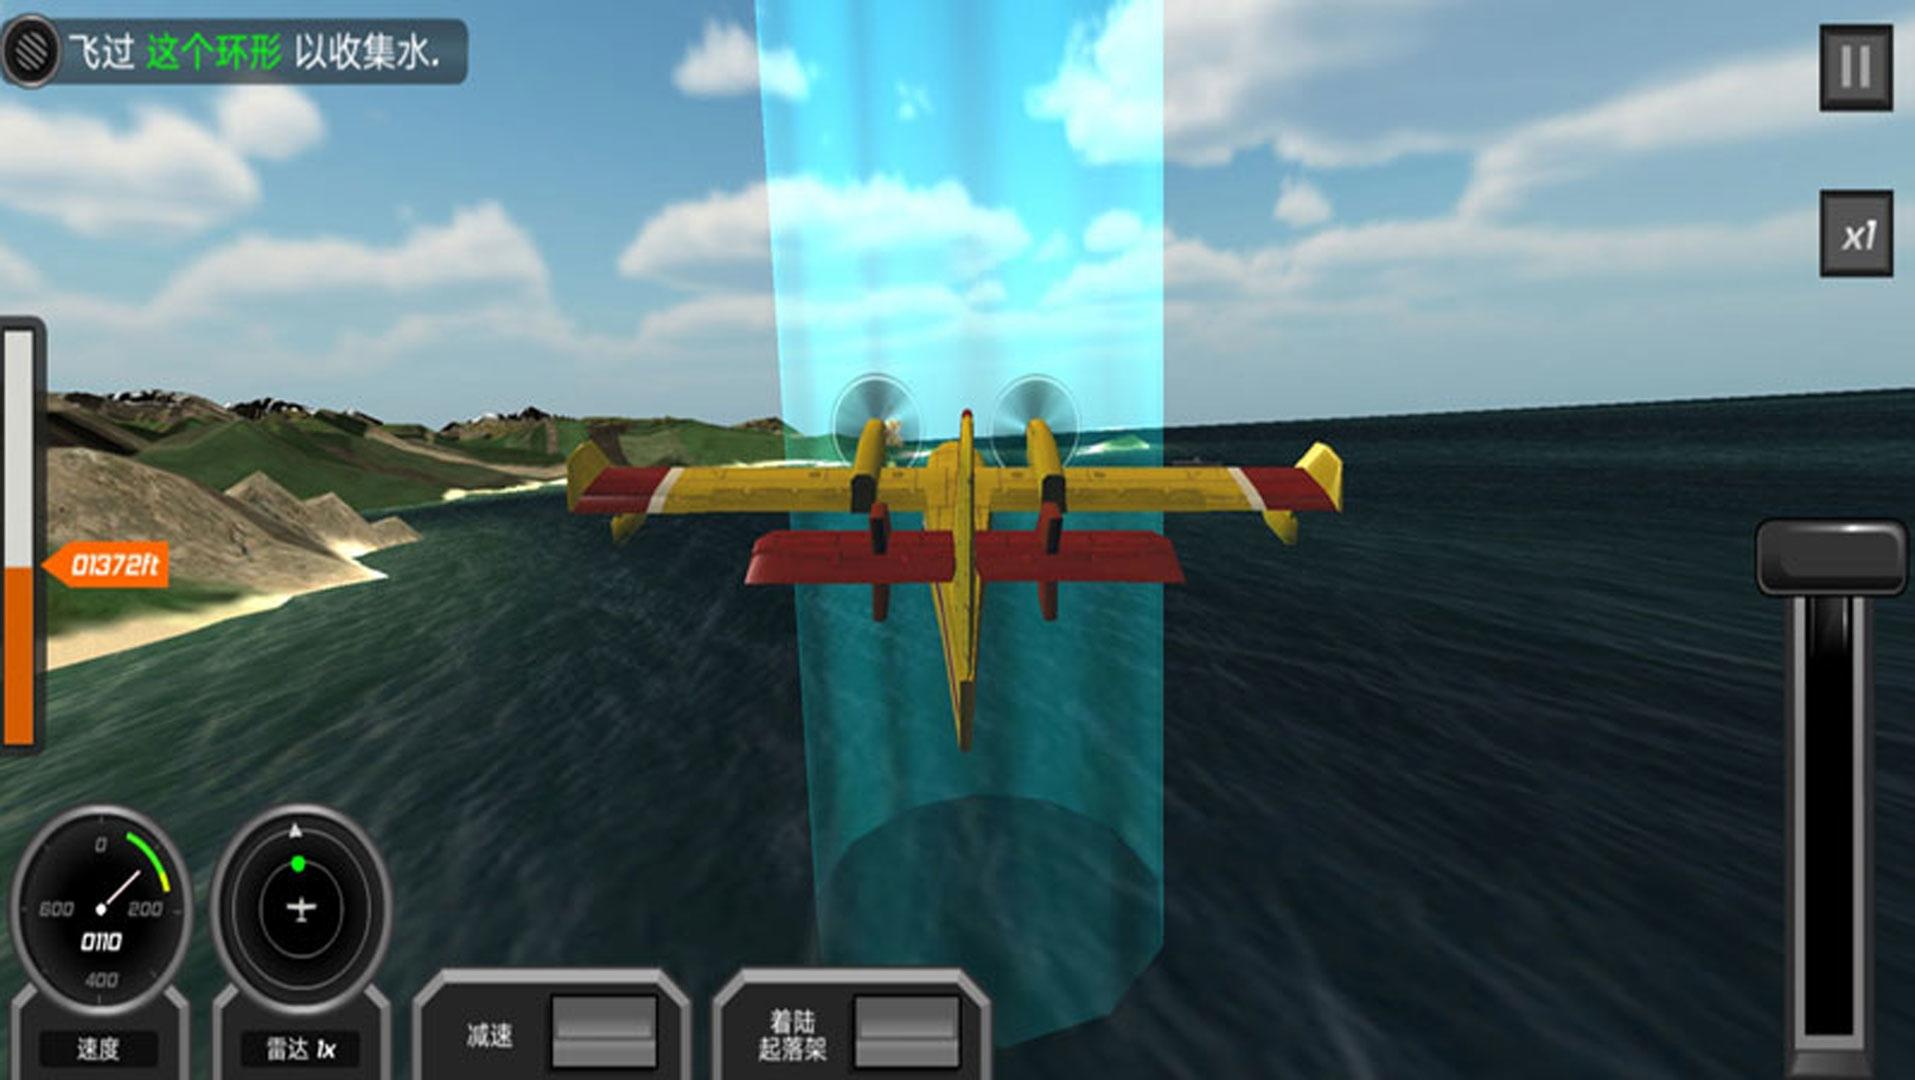 Screenshot 1 of Имитация вождения самолета 